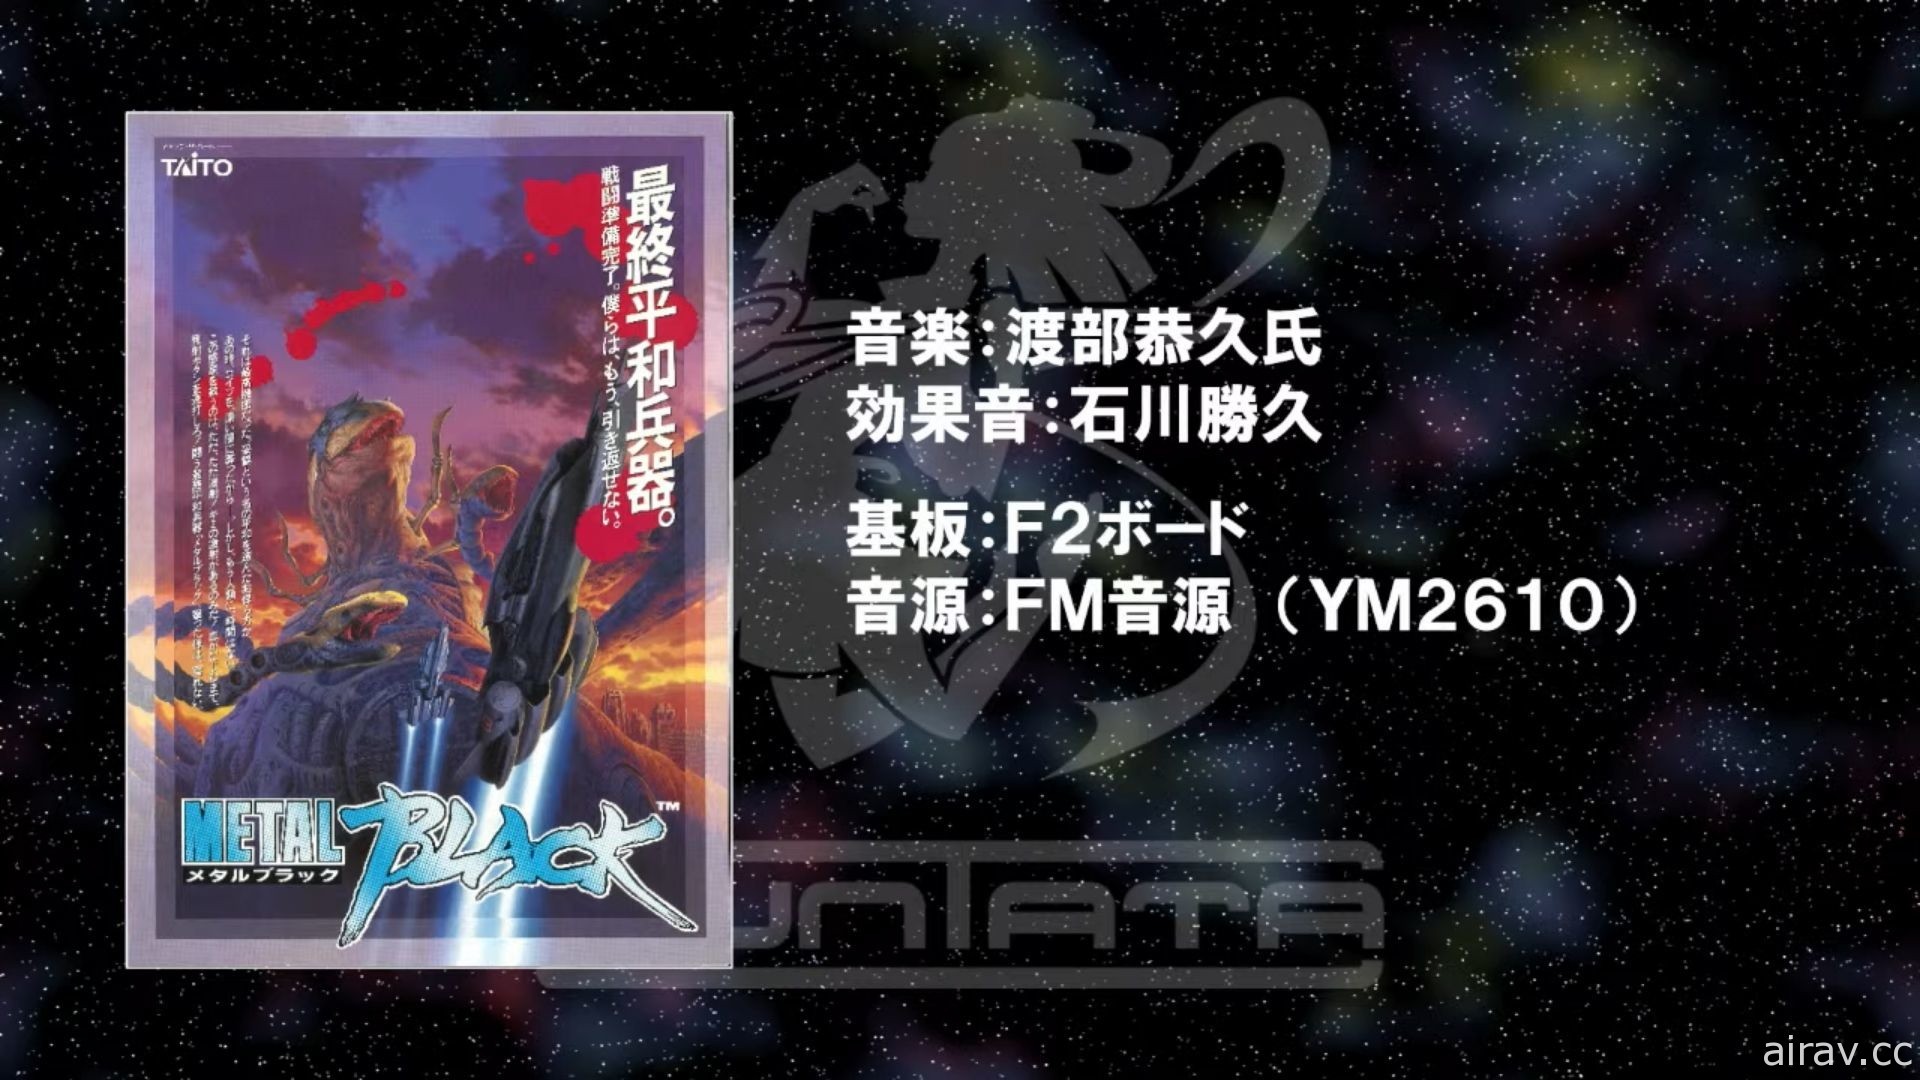 City Connection 舉辦「S 致敬精選輯 X TAITO」發表會 將推出多款經典復刻遊戲